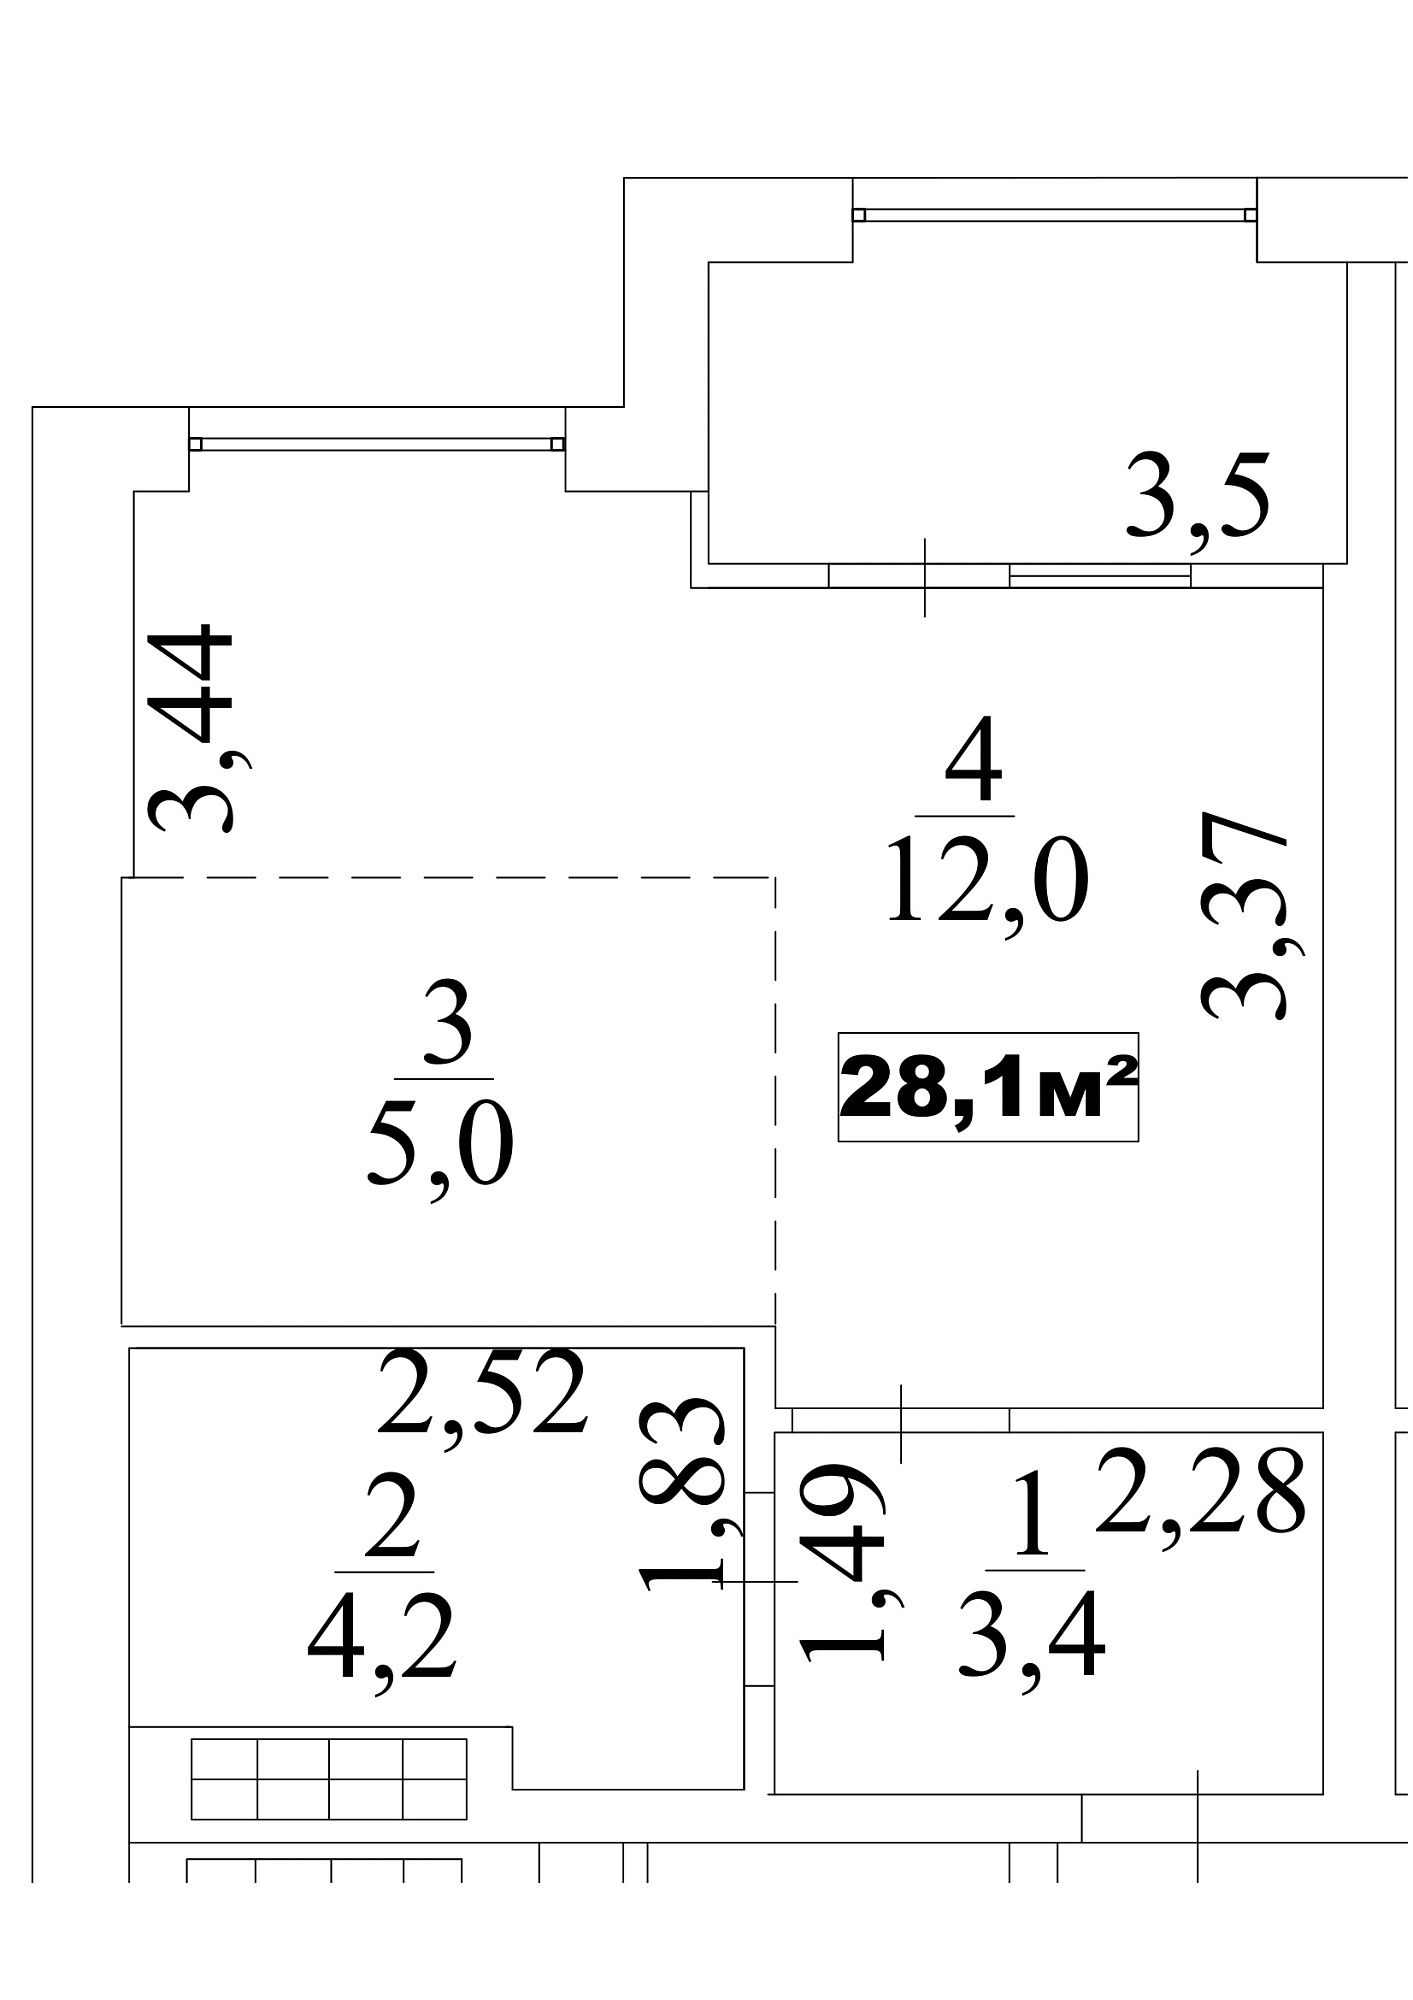 Планування Smart-квартира площею 28.1м2, AB-10-02/0012б.